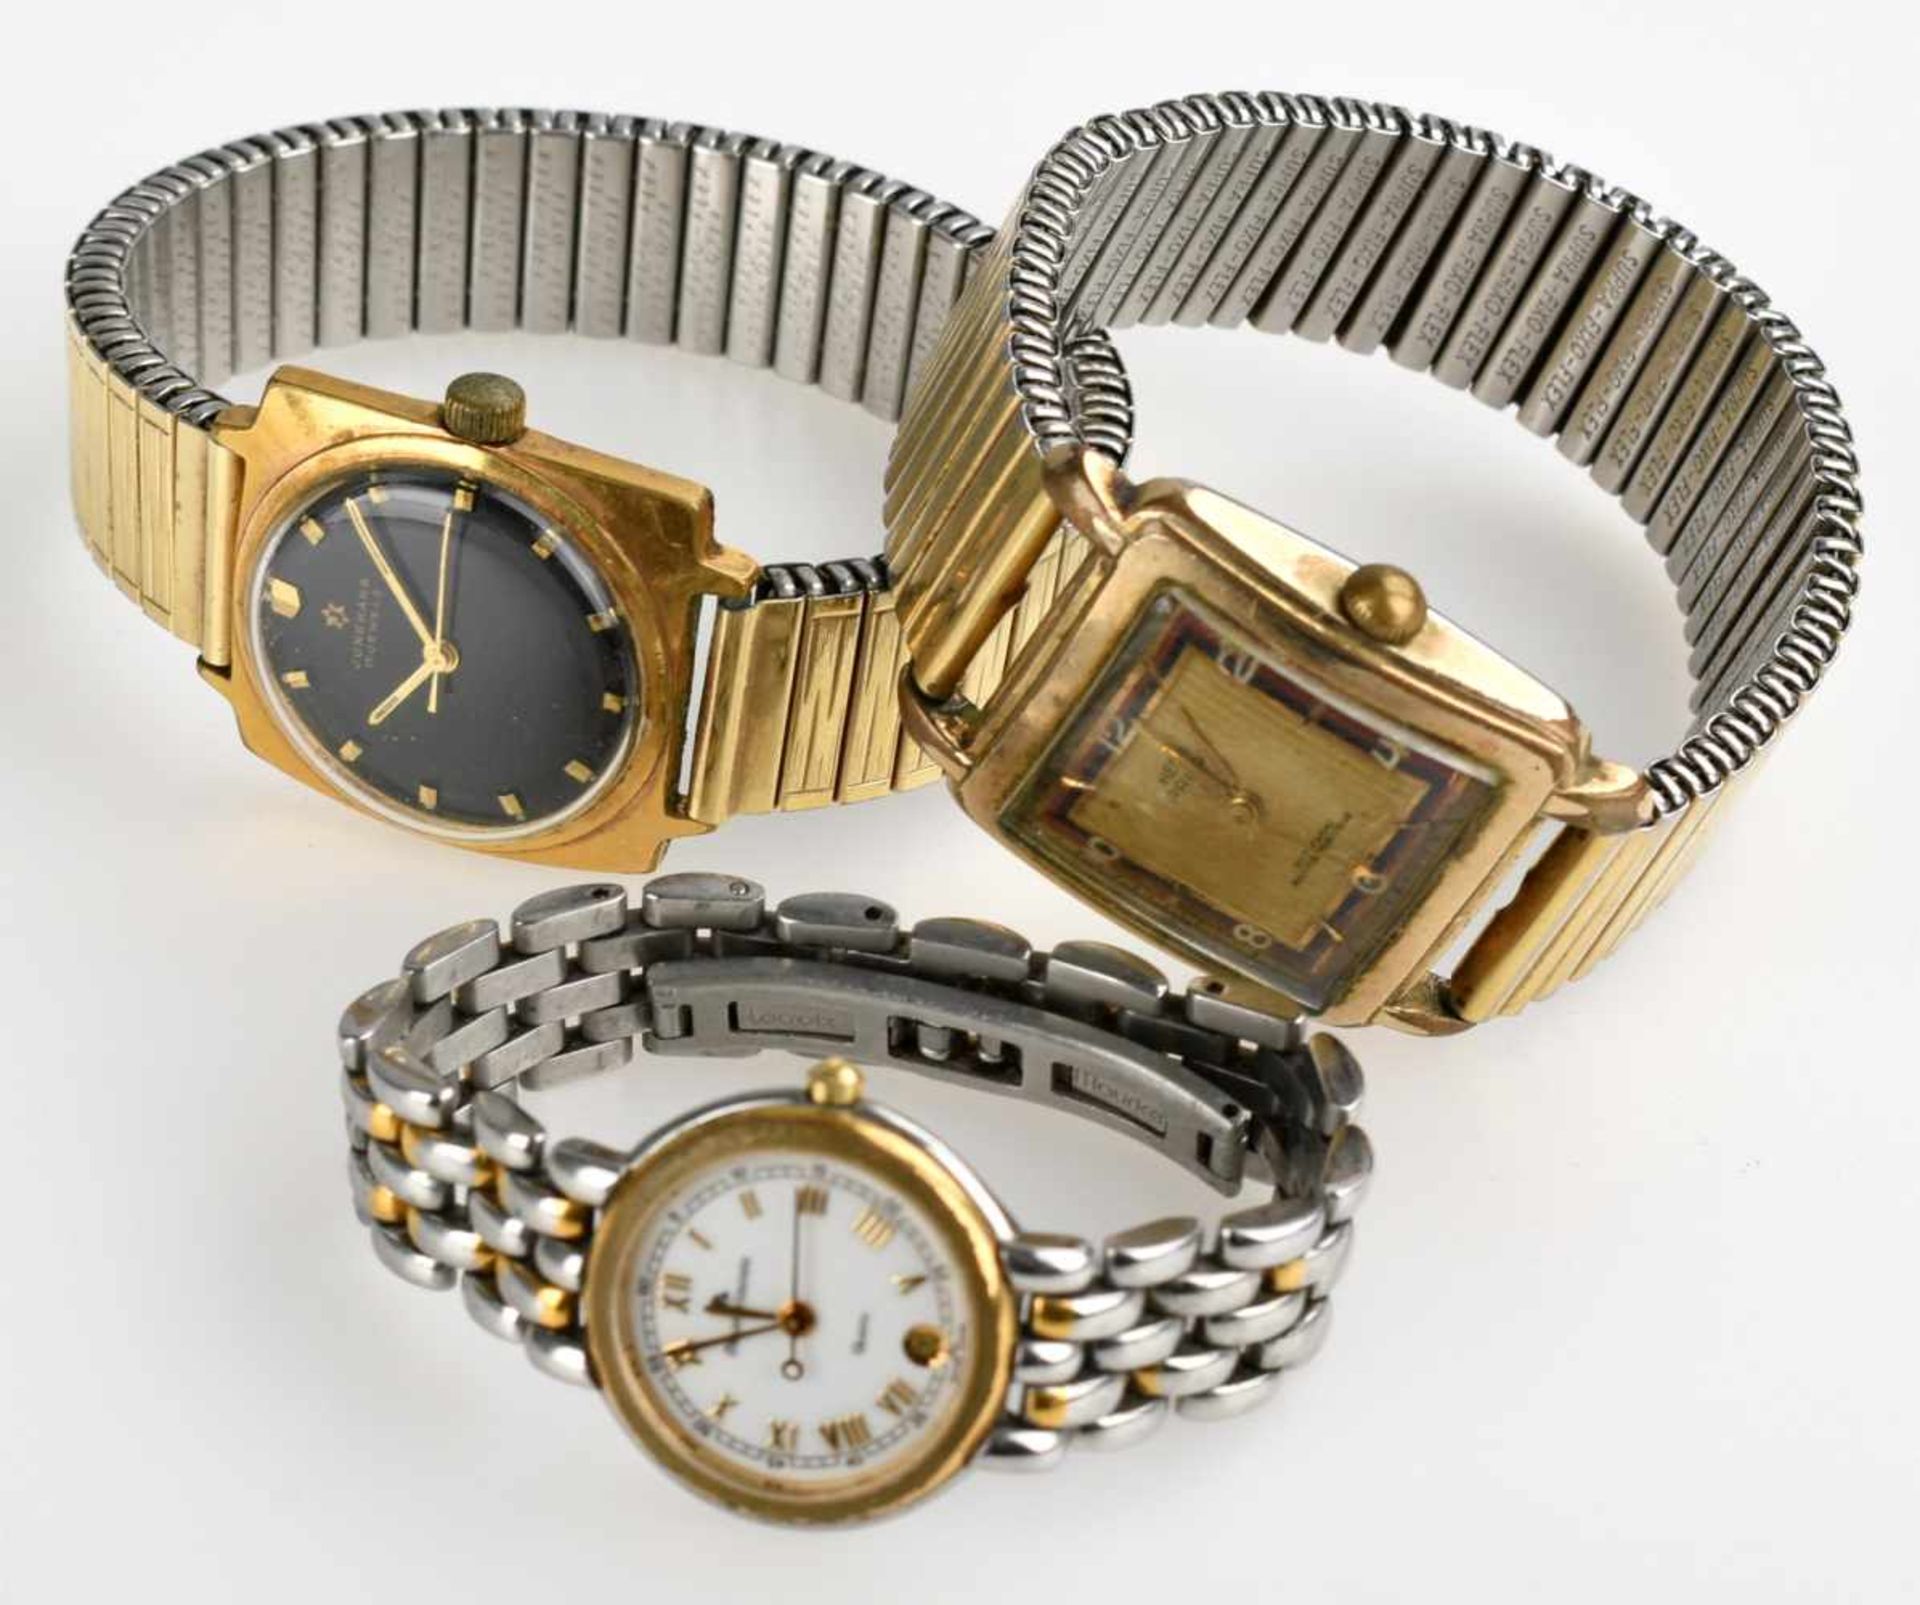 Drei Armbanduhren 2 Herrenarmbanduhren und 1 Damenarmbanduhr (Maurice Lacroix), ungeprüft, Alters- - Bild 2 aus 2